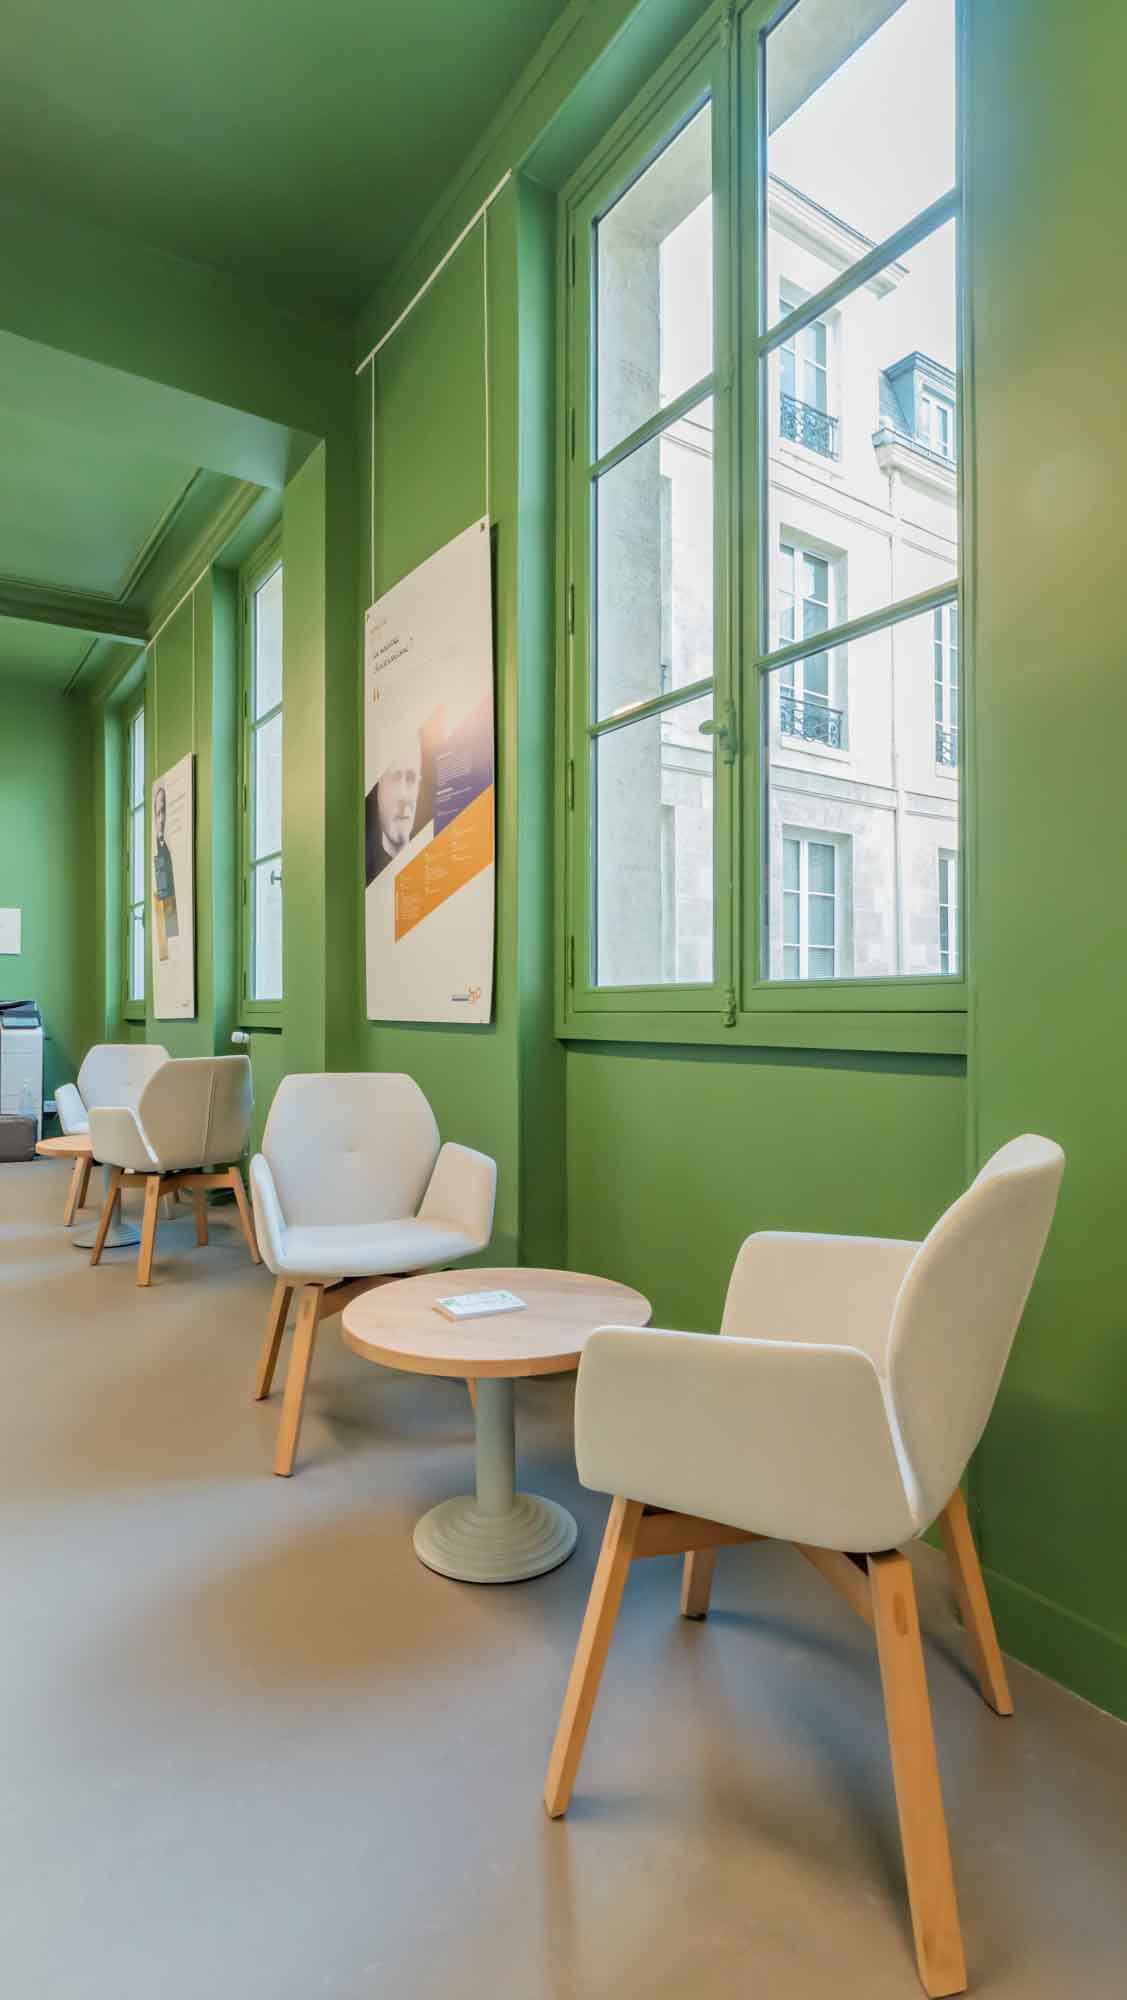 Salle d'attente de l'ICP, fauteuils et tables basses dans un environnement coloré.